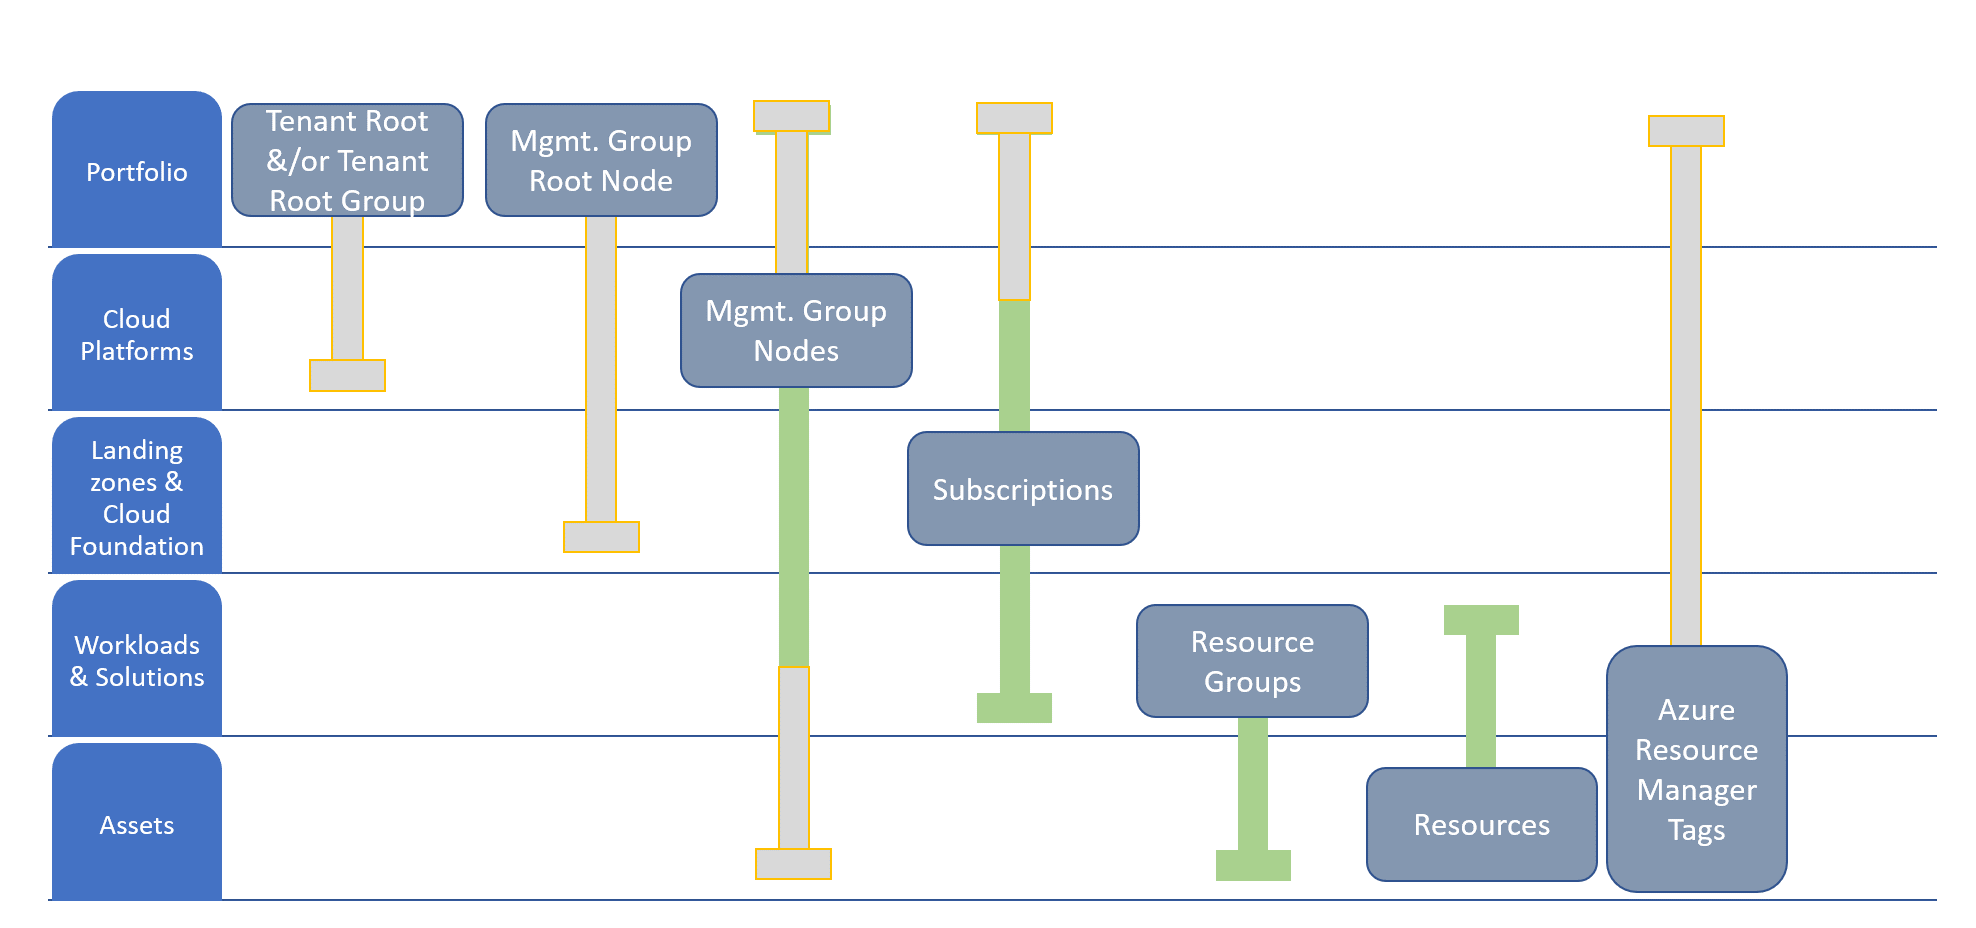 Organización de recursos alineada con la jerarquía